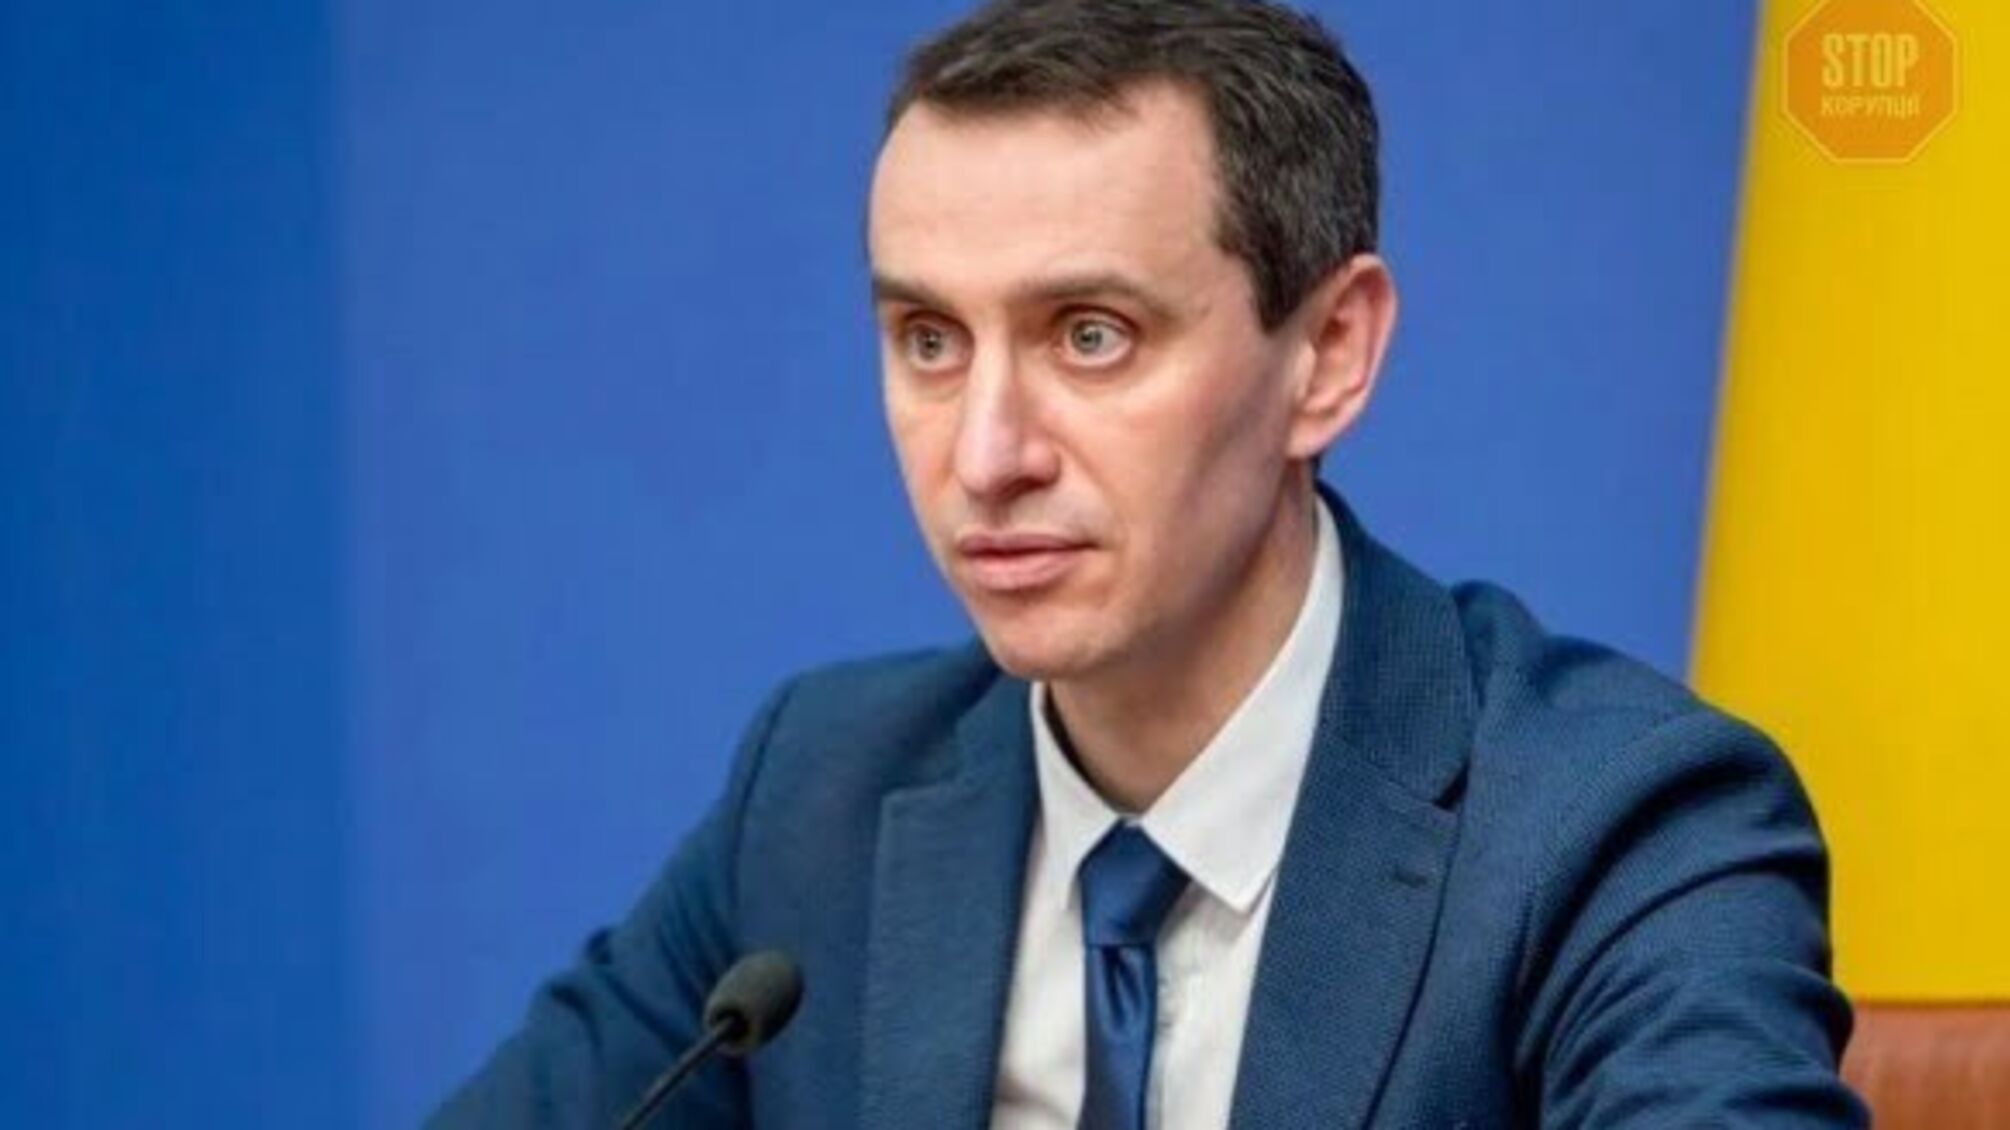 Ляшко не виключає своєї участі у виборах мера Києва